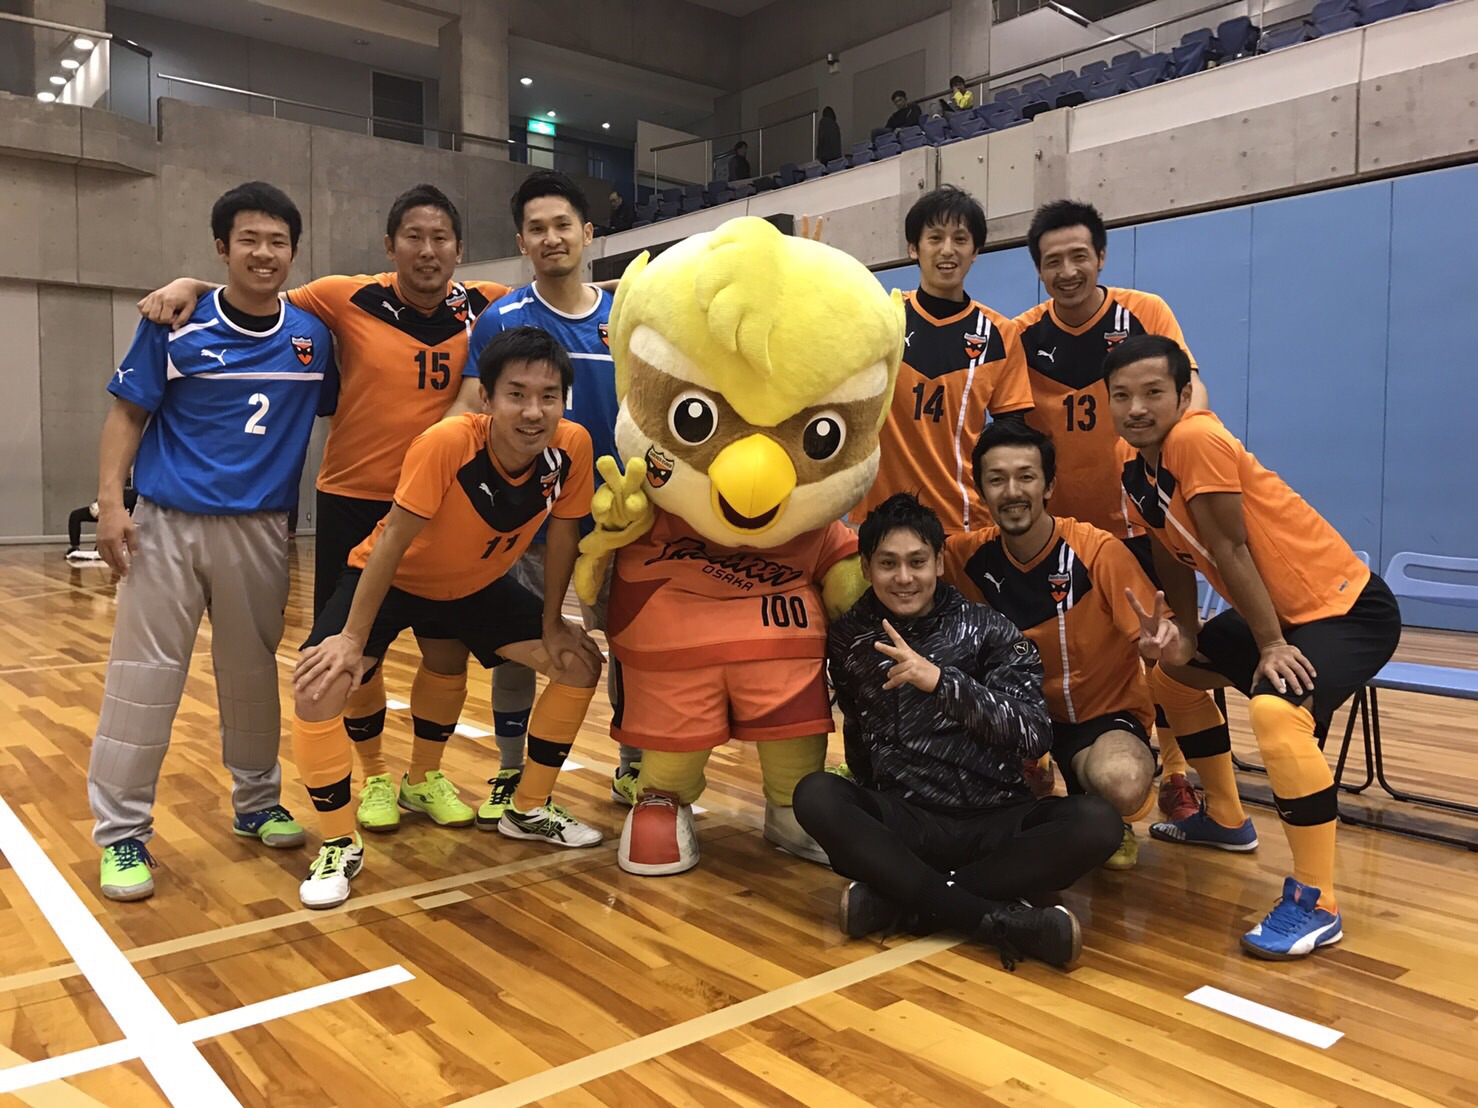 シュライカー大阪ob戦 一般社団法人 Gatt Futsal School ガットフットサルスクール